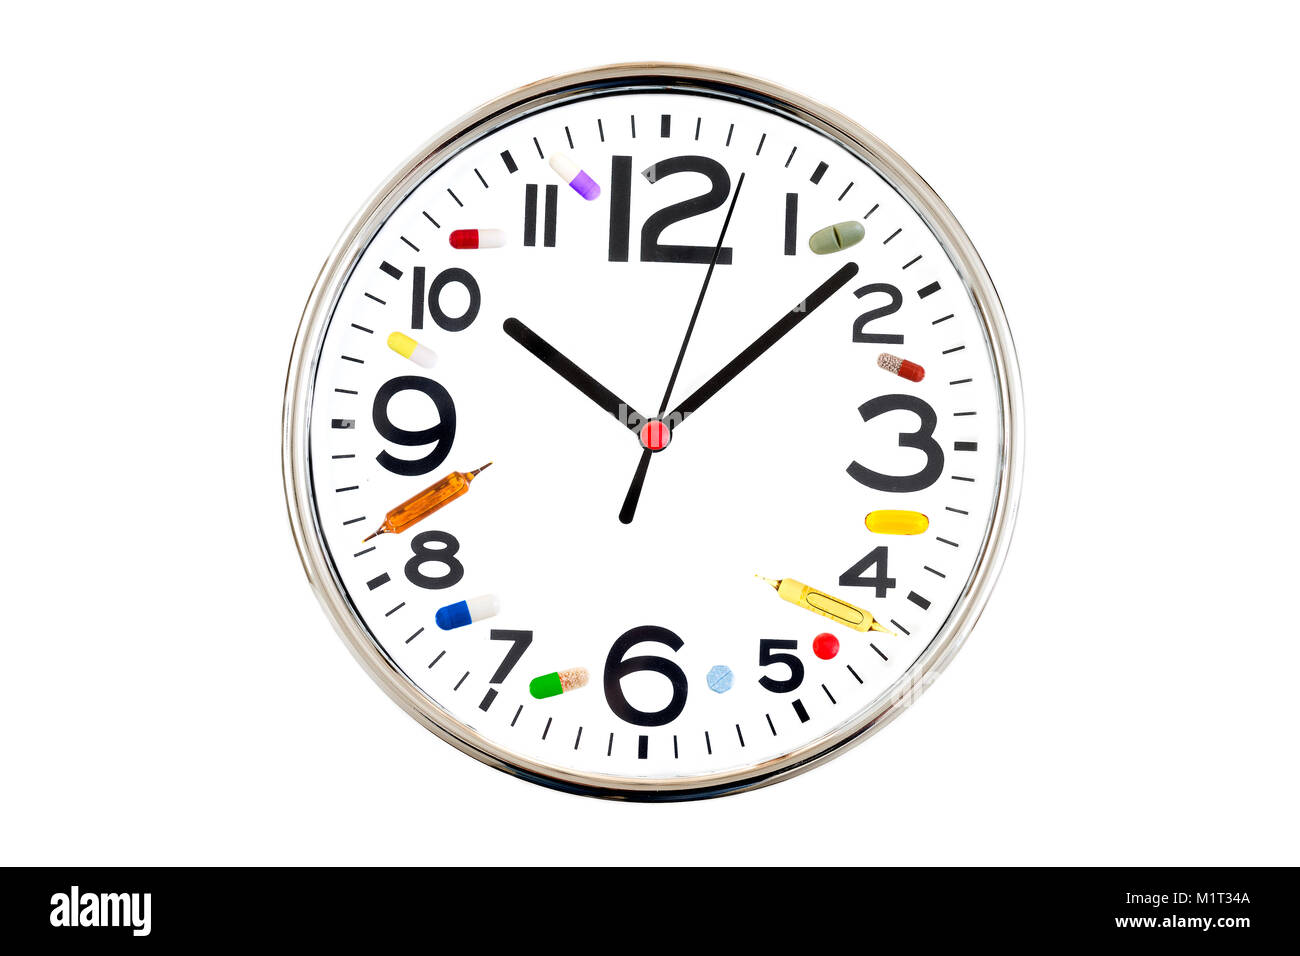 Concept de prendre des médicaments à temps . Horloge analogique avec différents numéros à côté de médecine faite à partir de différents comprimés, capsules, comprimés, ampoules et médicinales sur fond blanc Banque D'Images